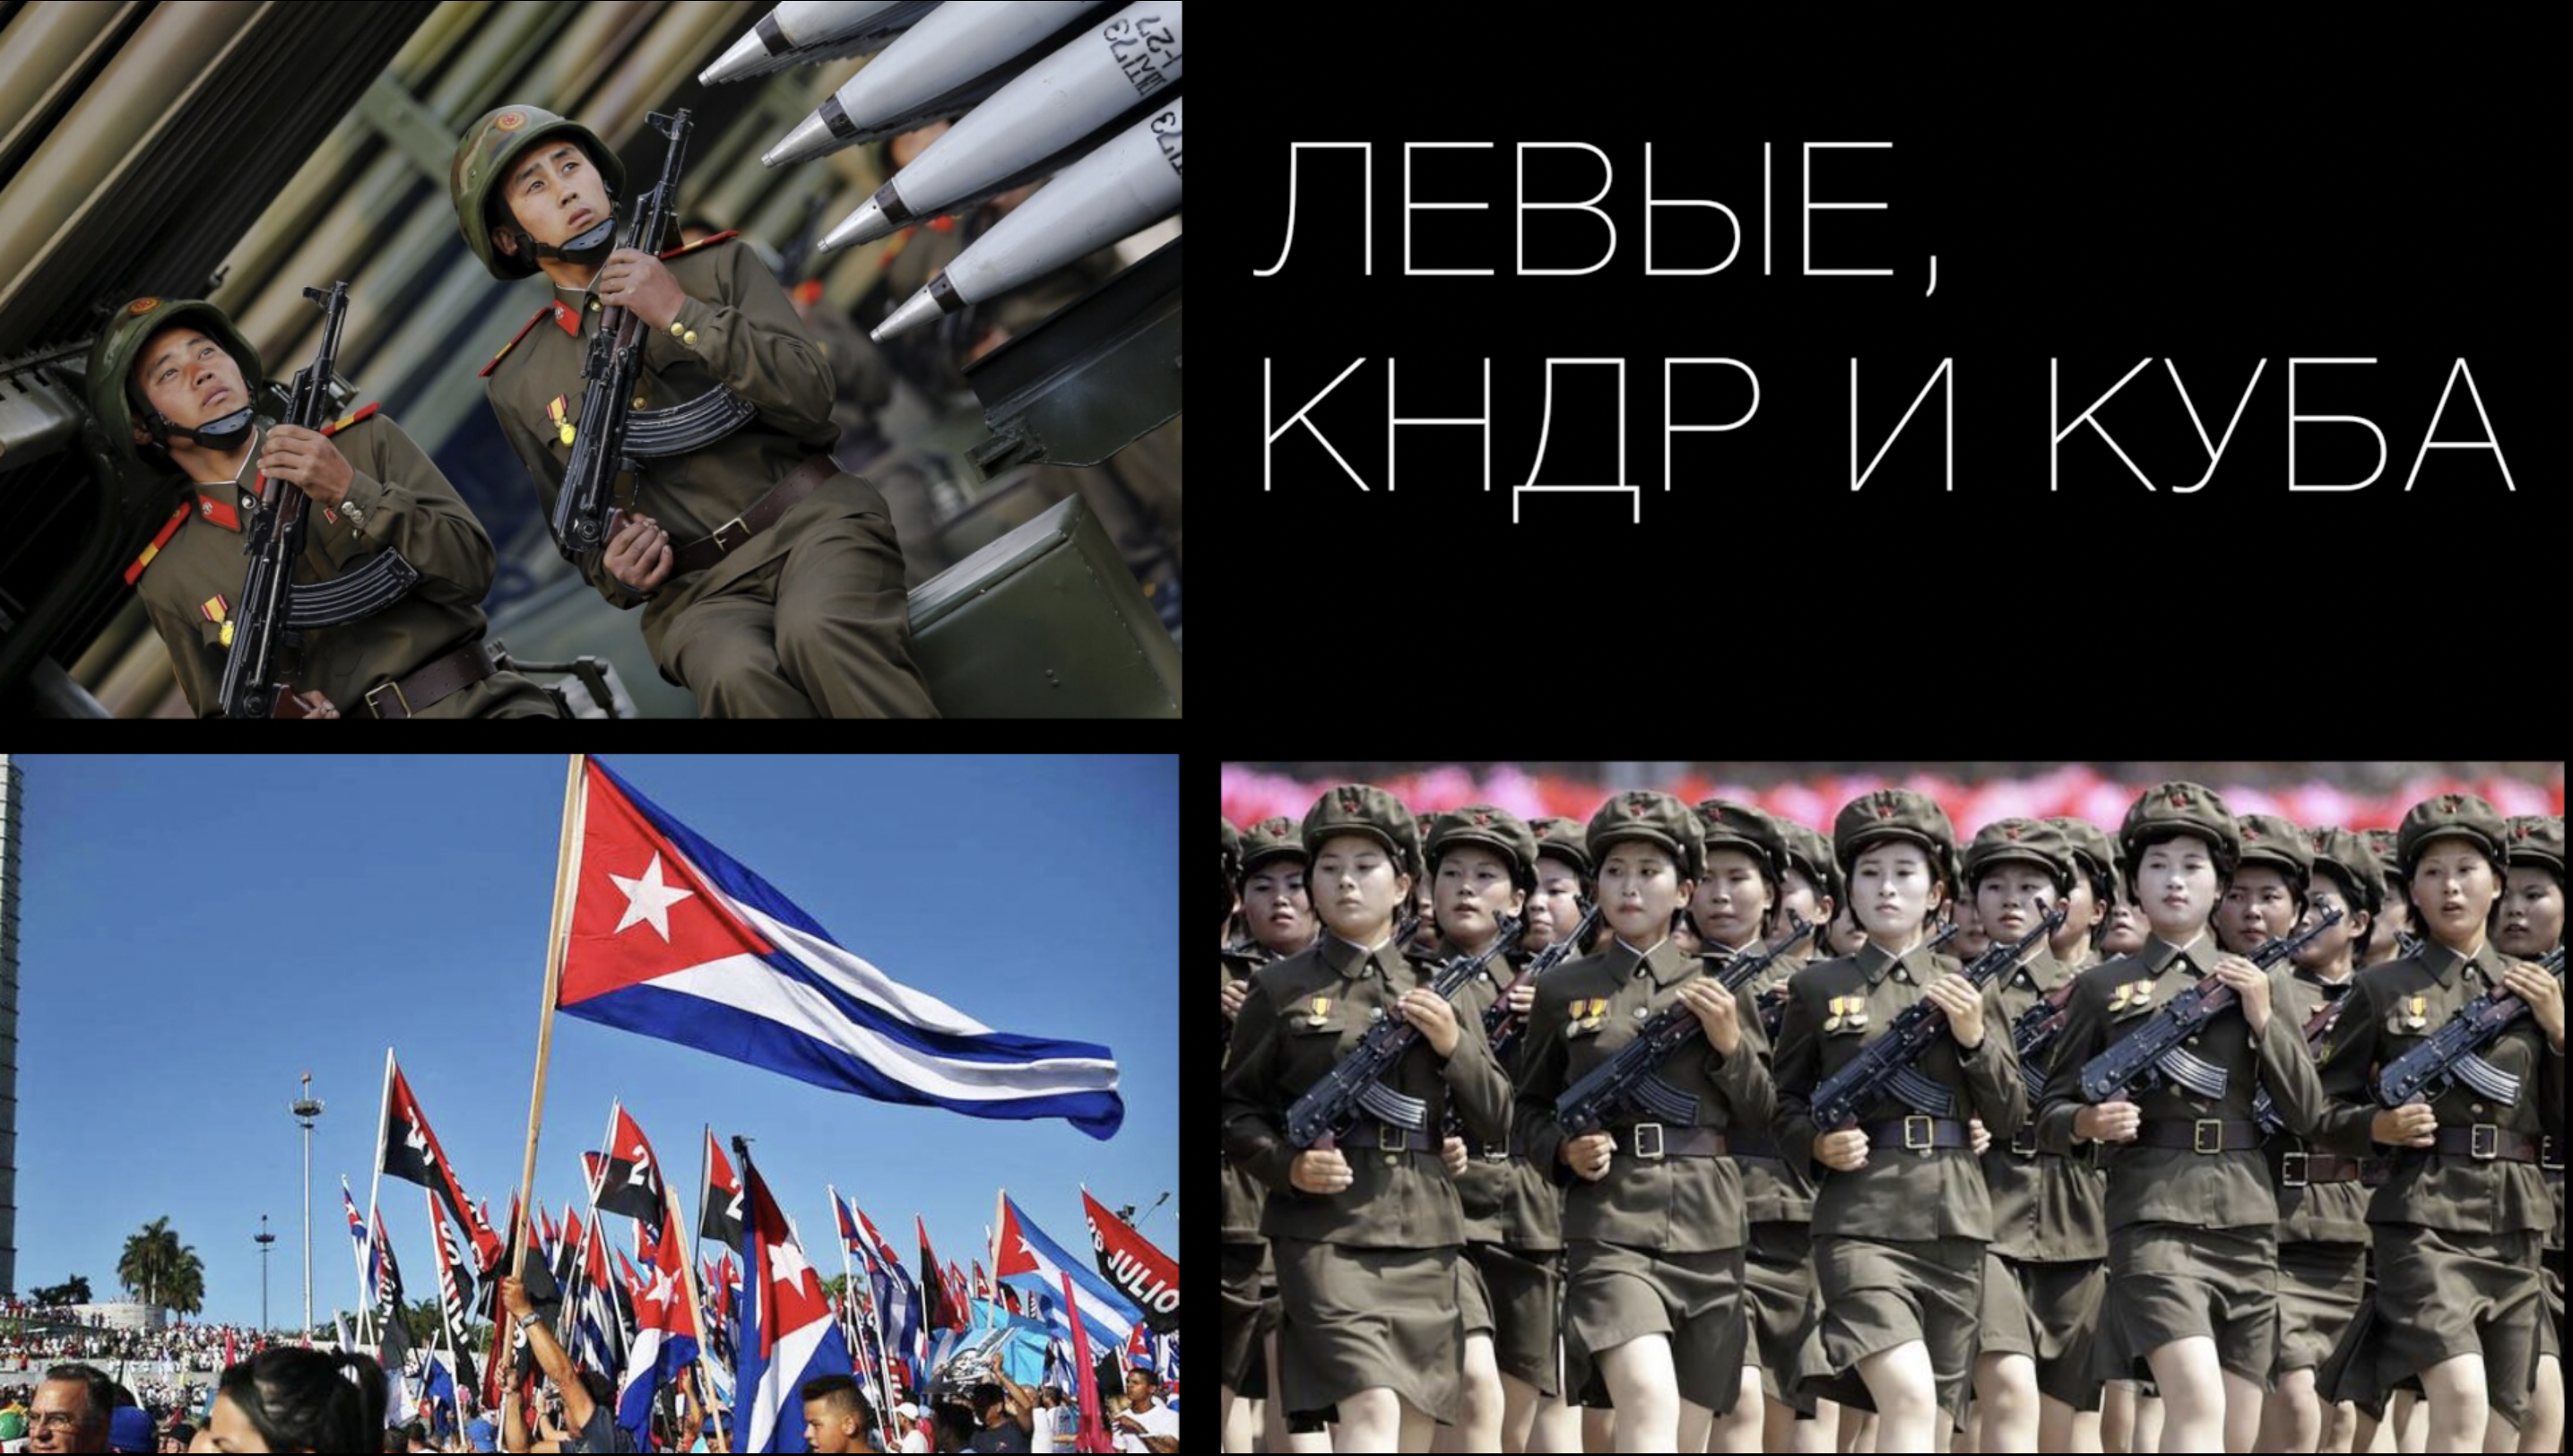 Куба и КНДР. Флаги перекрещенные КНДР И Россия. Подборка метисов Куба + Корея. Революционная инициатива